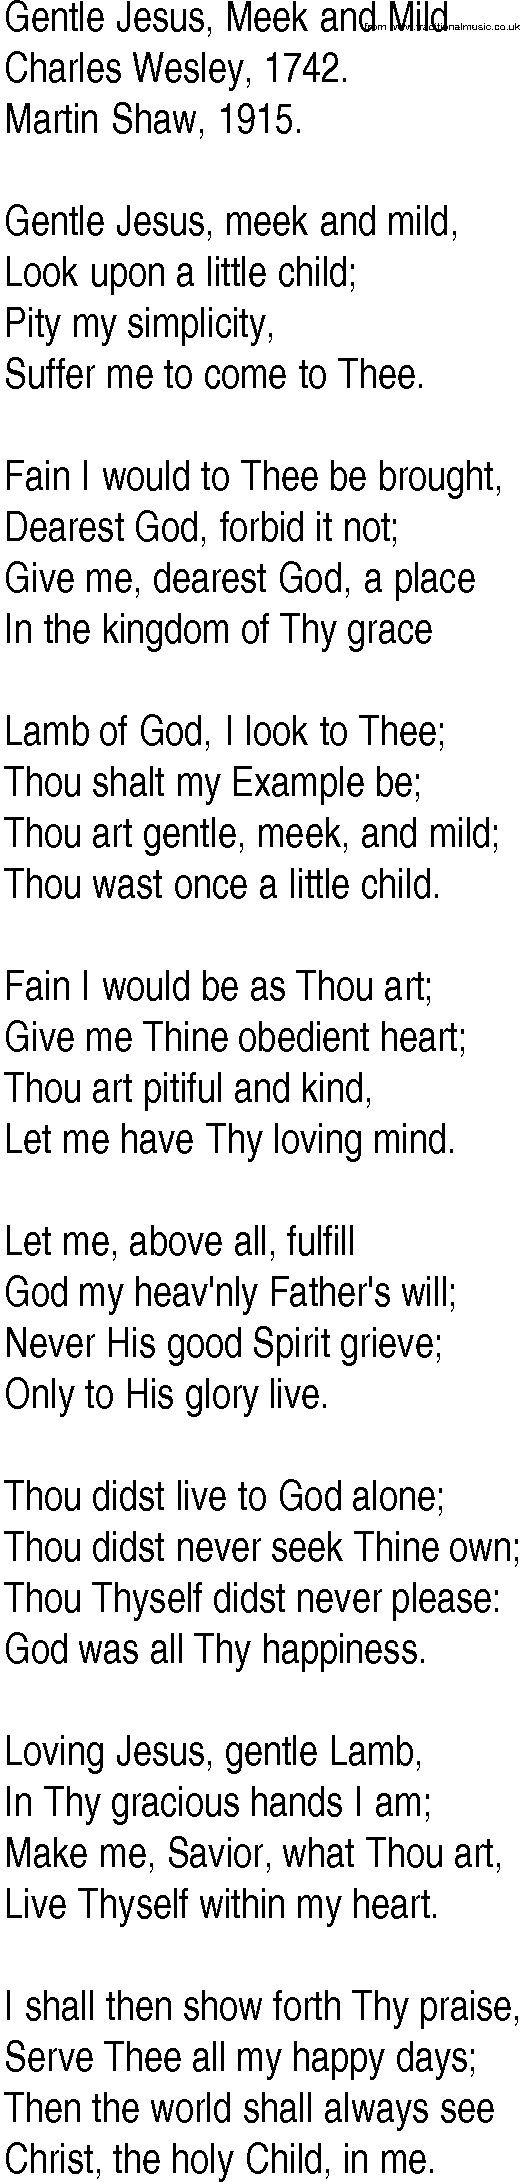 Hymn and Gospel Song: Gentle Jesus, Meek and Mild by Charles Wesley lyrics